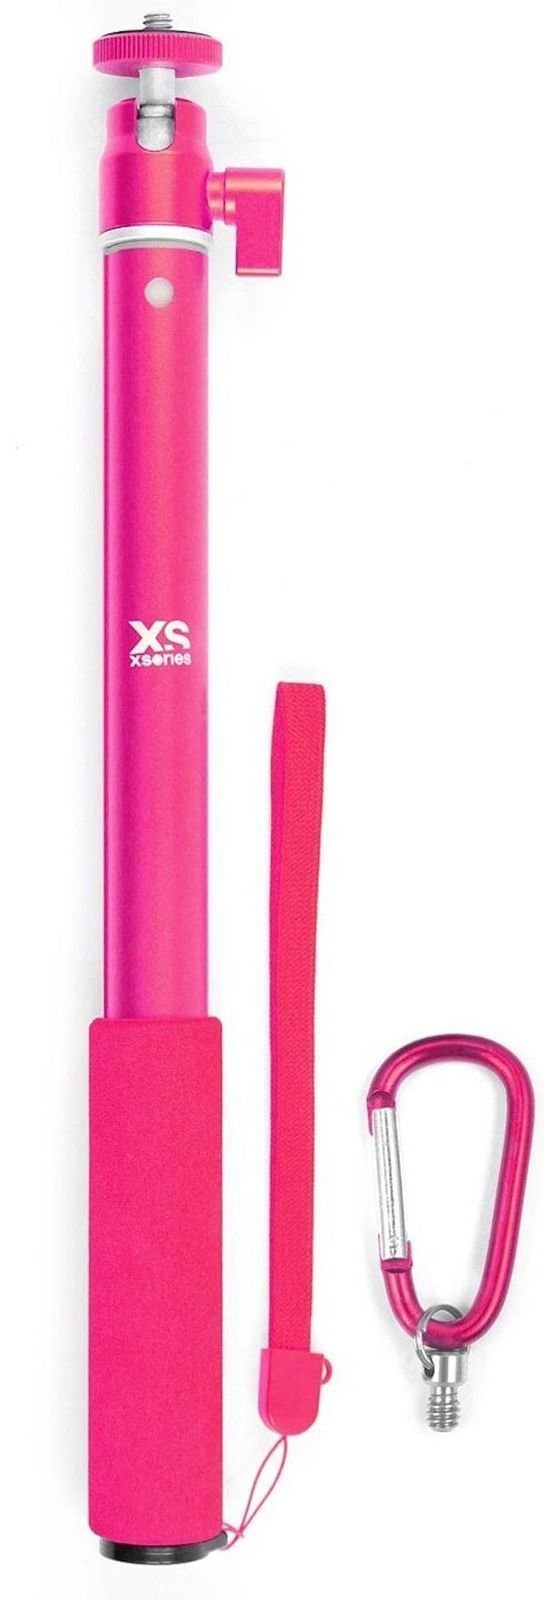 GoPro-accessoires XSories Big U-Shot Pink